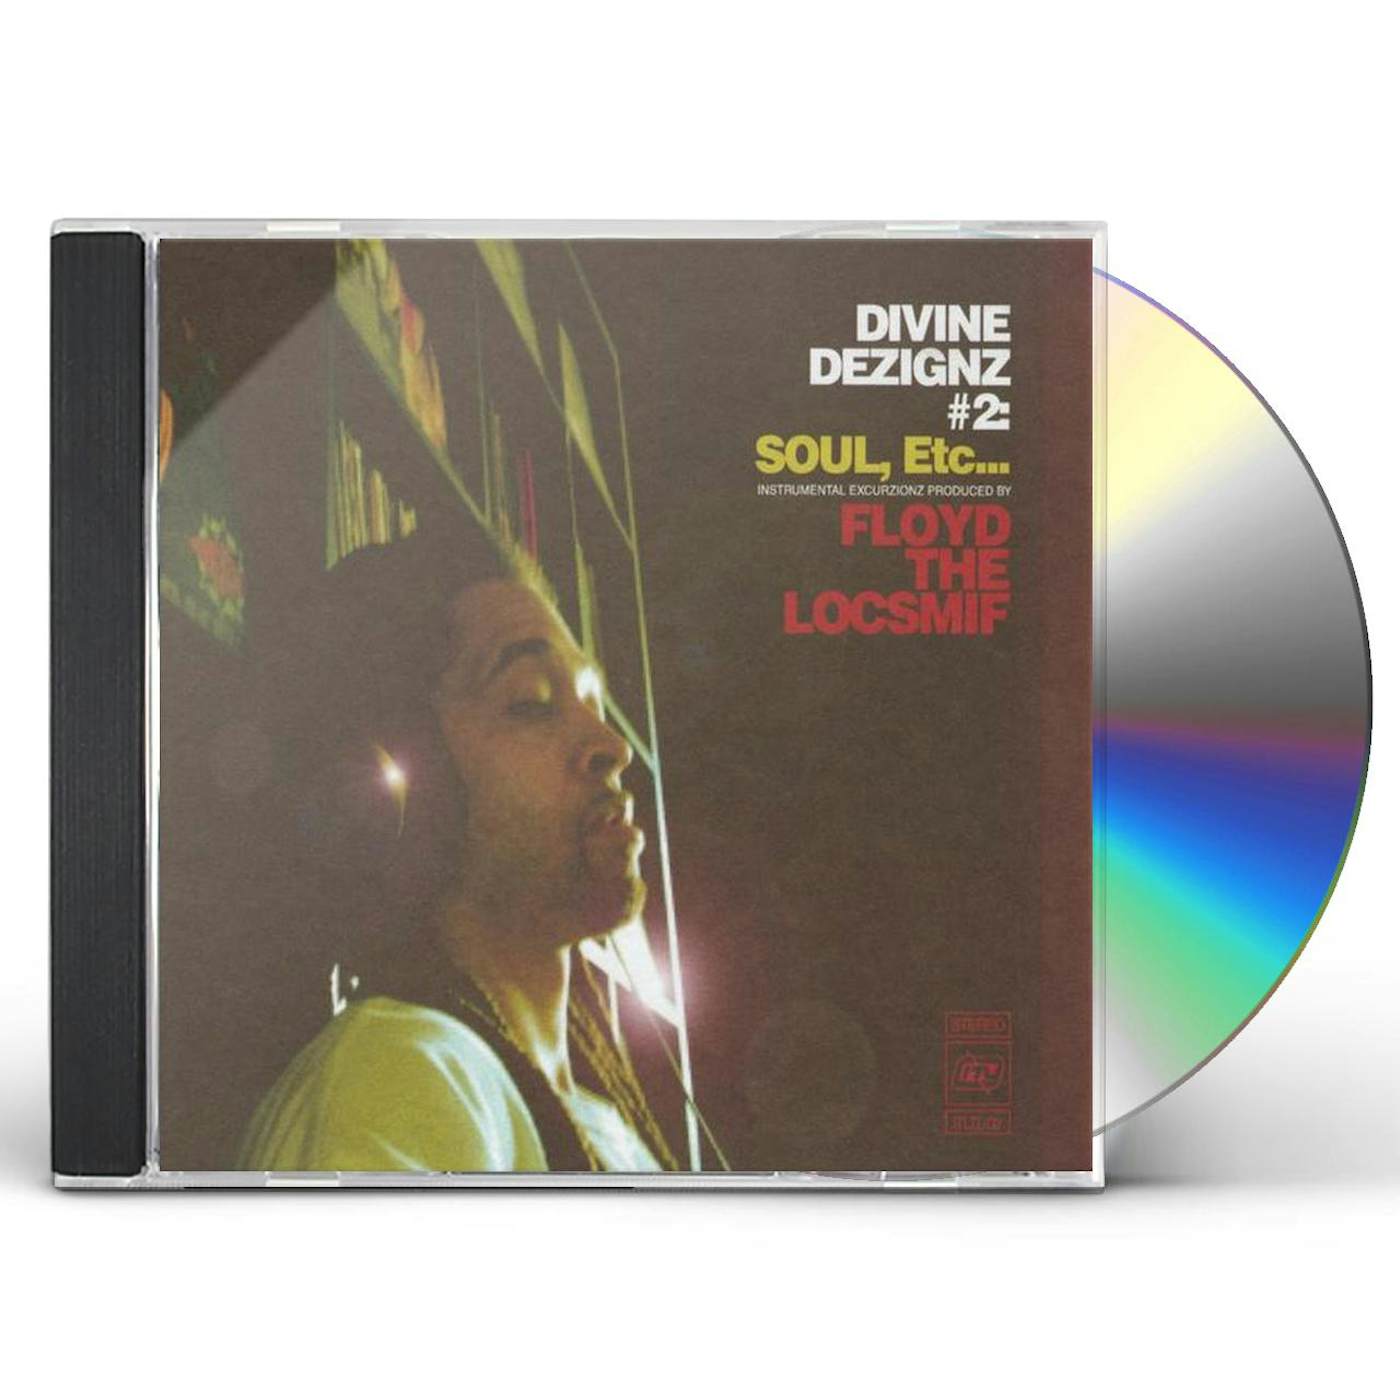 Floyd The Locsmif DIVINE DEZIGNZ #2: SOUL ETC CD